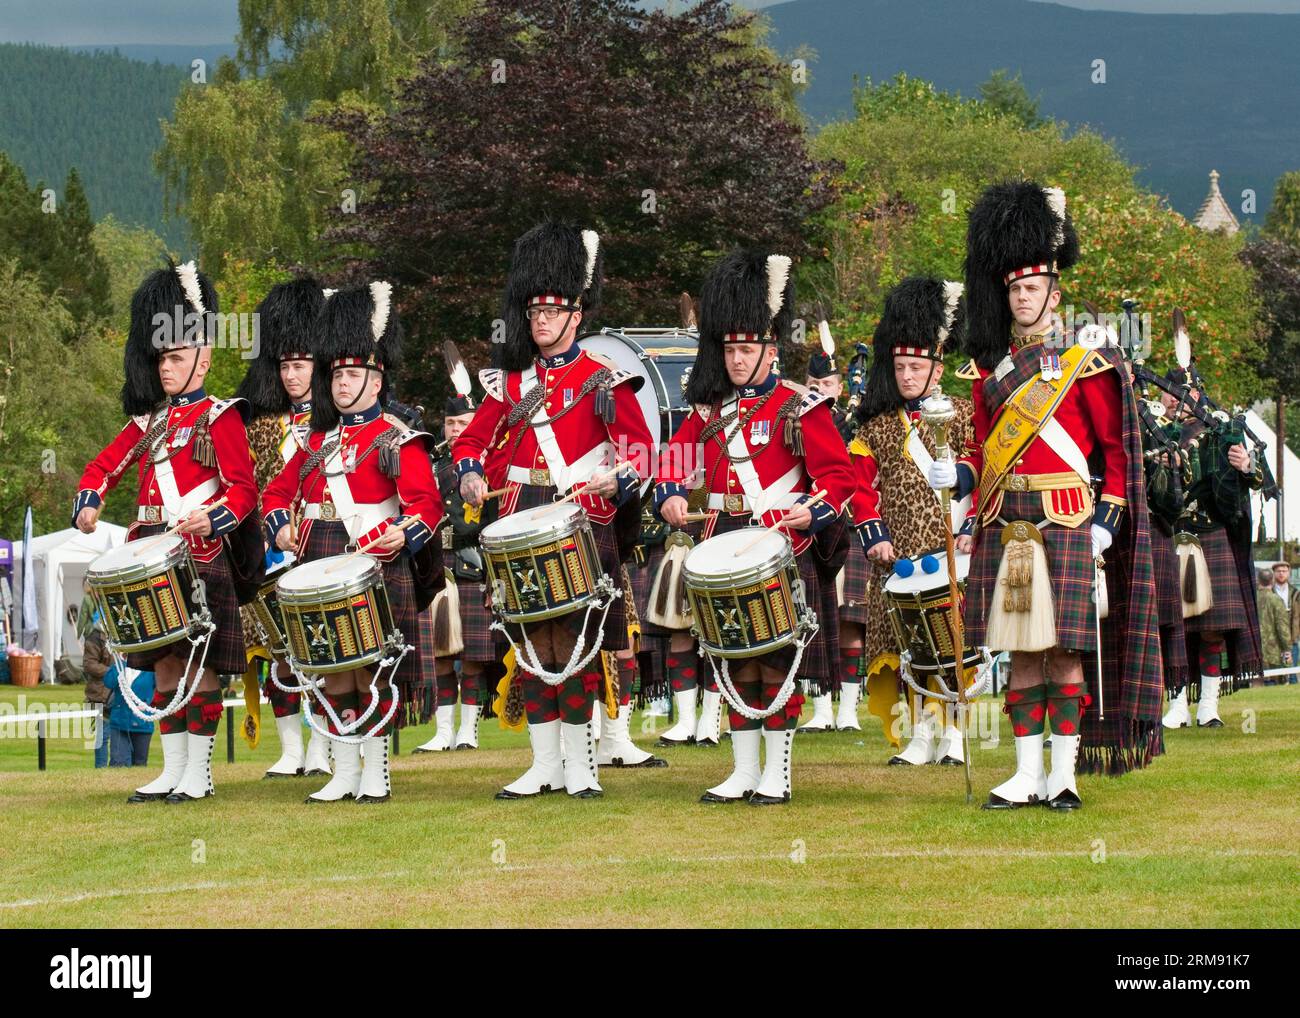 Défilé d'un groupe de pipes écossais au Braemar Gathering, Highland Games. Aberdeenshire Banque D'Images